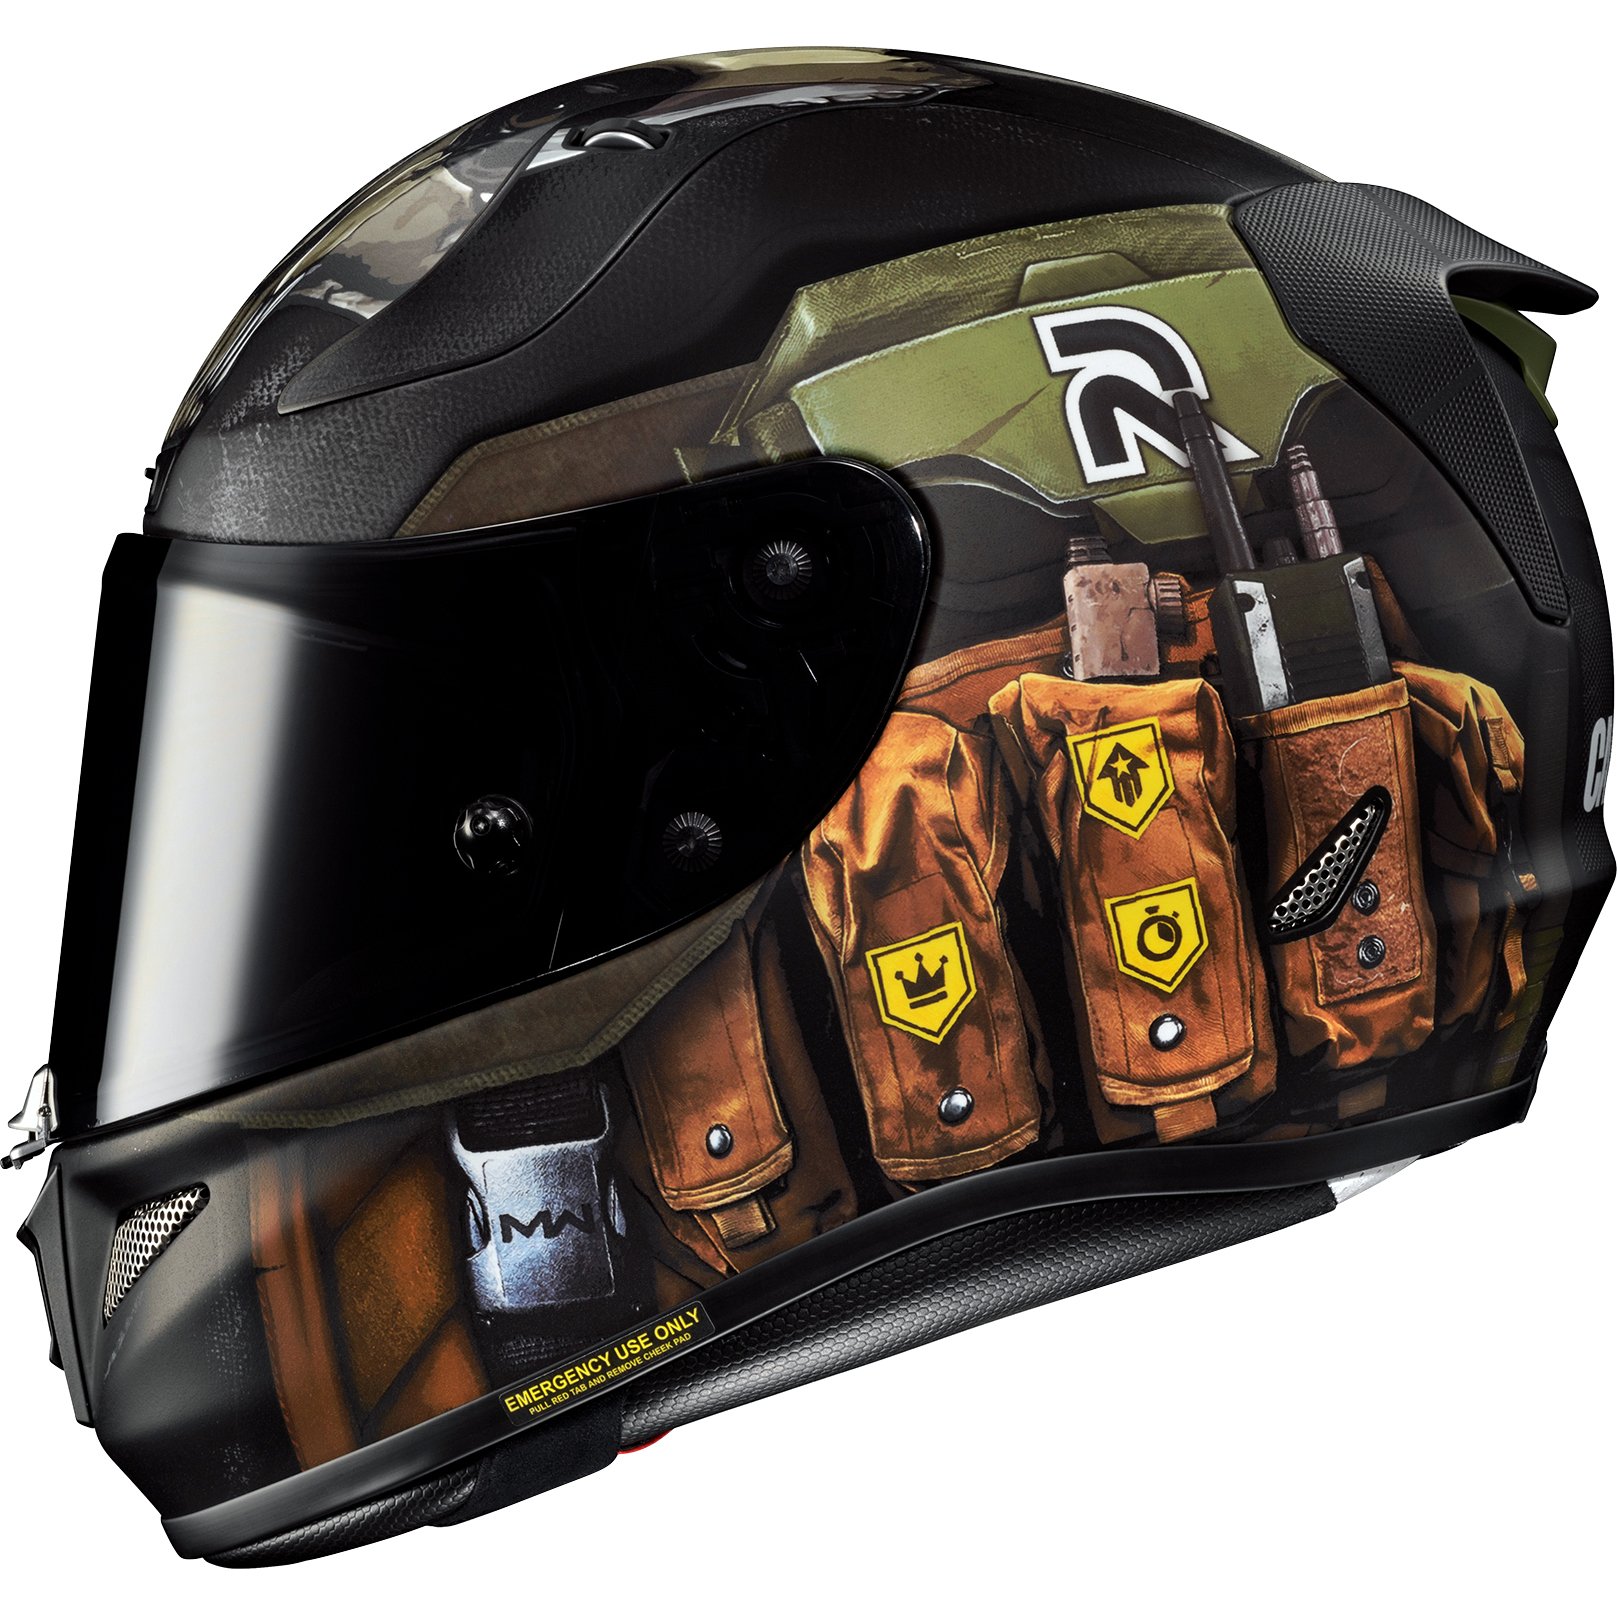 Reflektierende Aufkleber für Punisher-Helm - Motorradteil